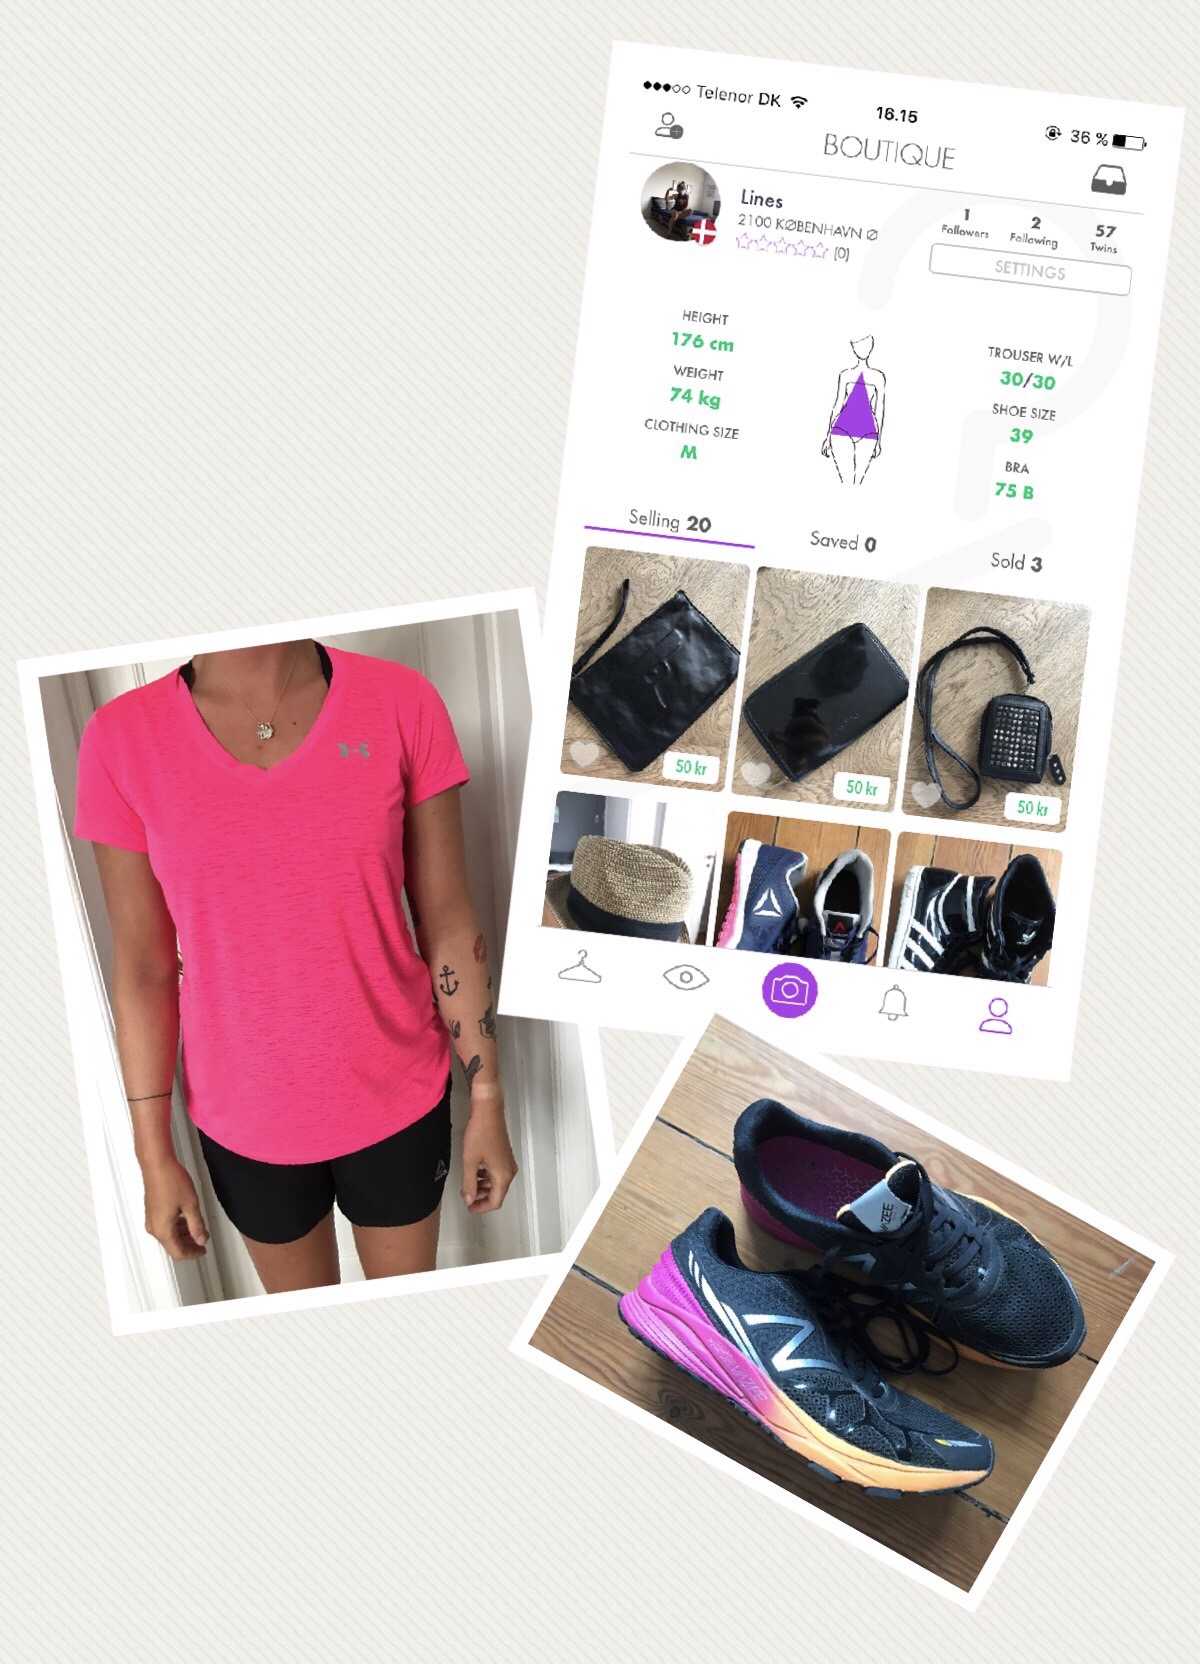 ZADAA: Ny app til og salg af second tøj & sko | Livsstil Lines